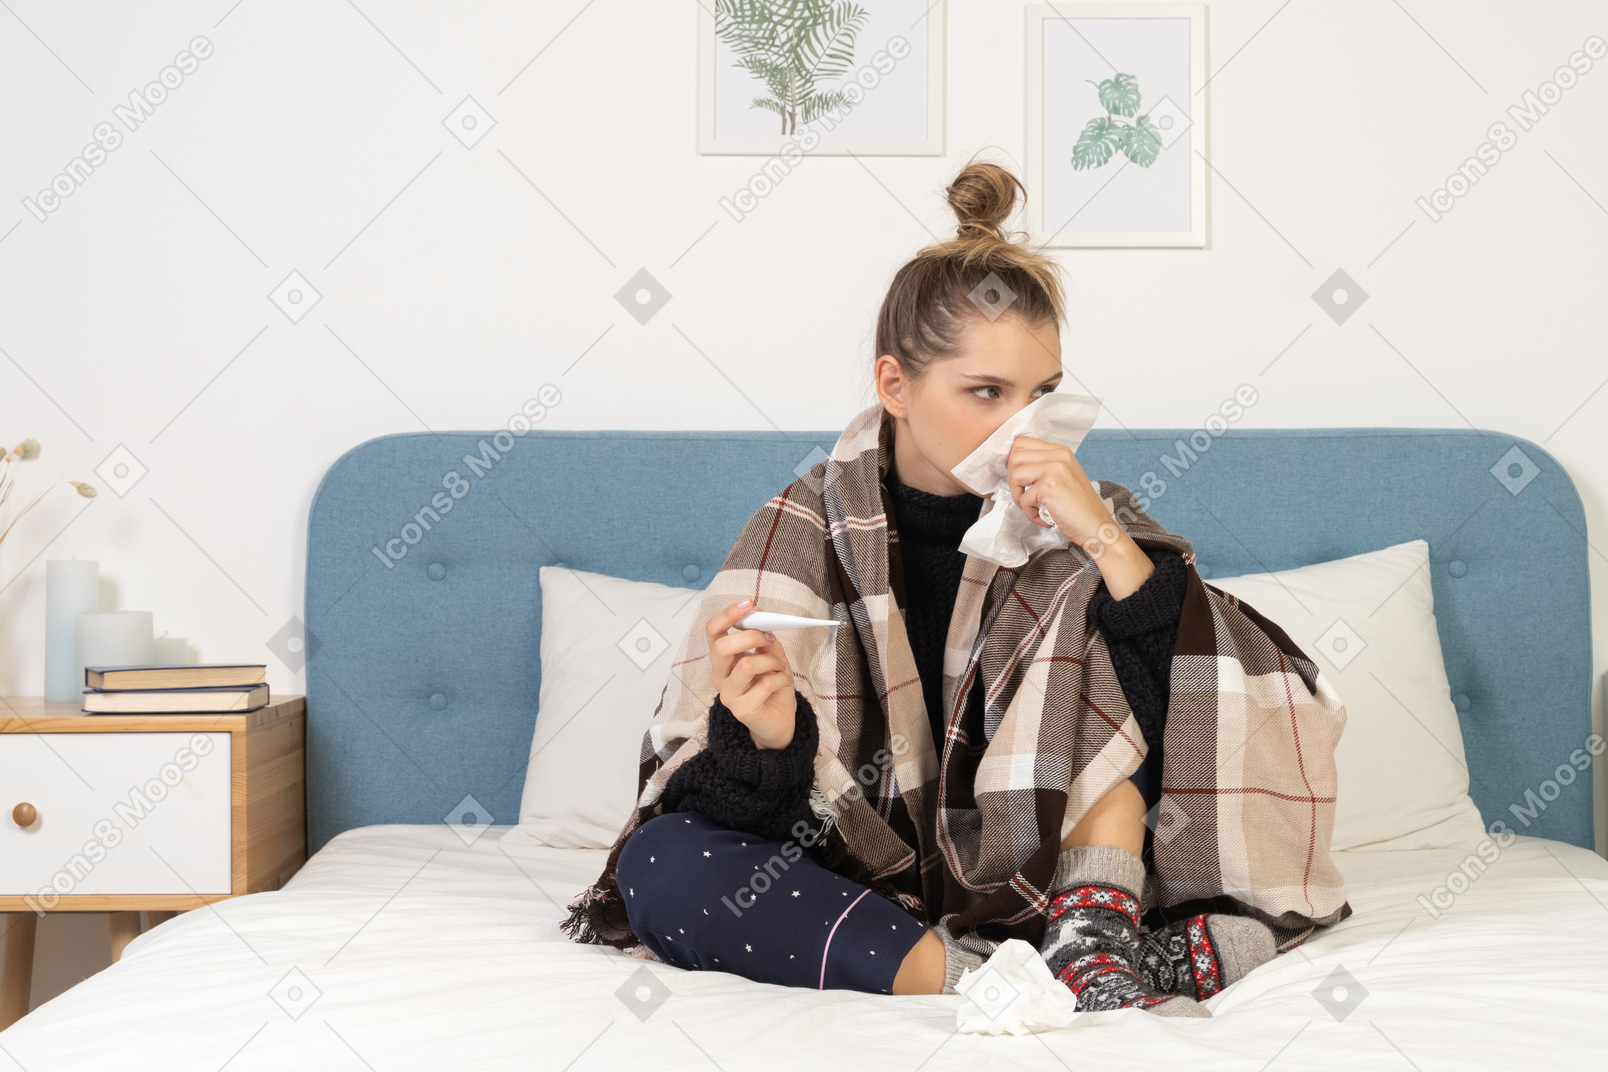 Вид спереди больной молодой женщины в пижаме, завернутой в клетчатое одеяло, сморкающейся